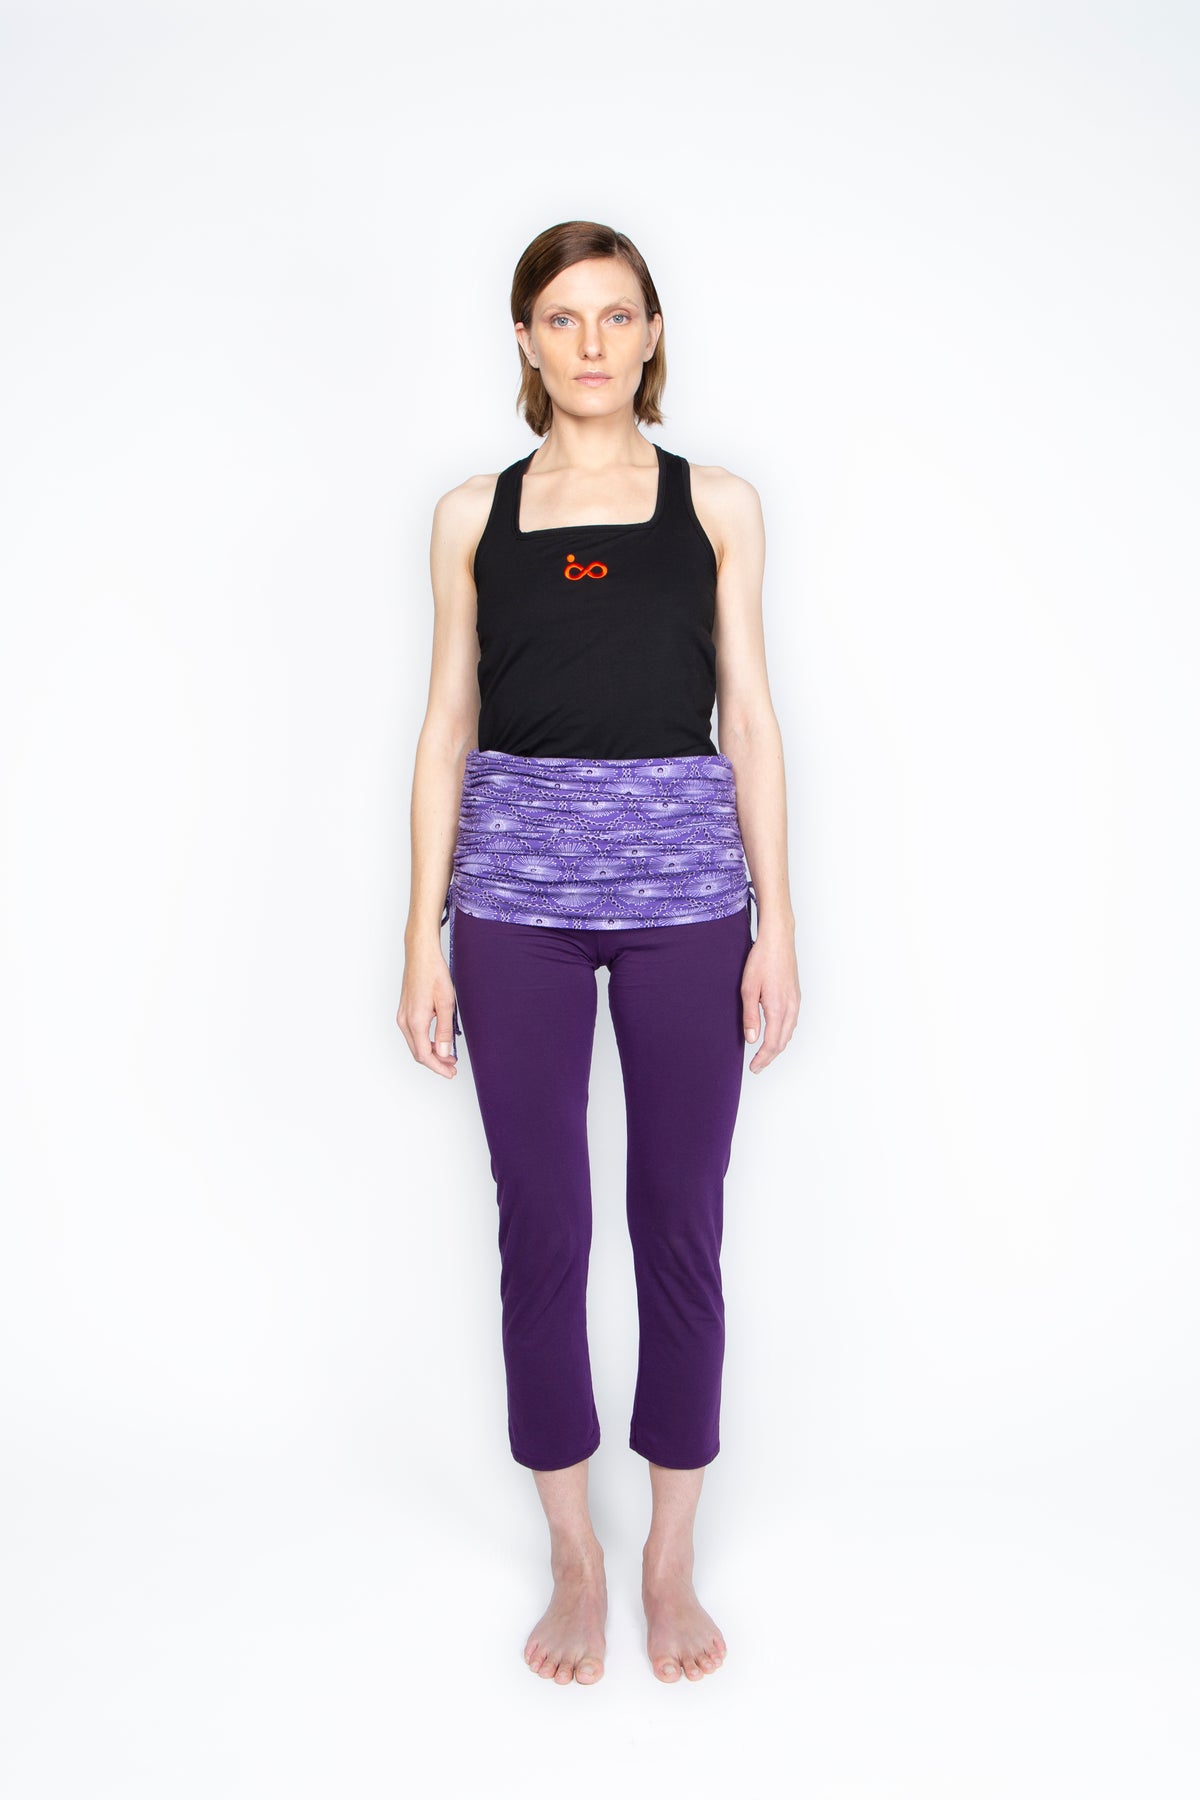 Anna Goodman Imagine Legging, Yogawear